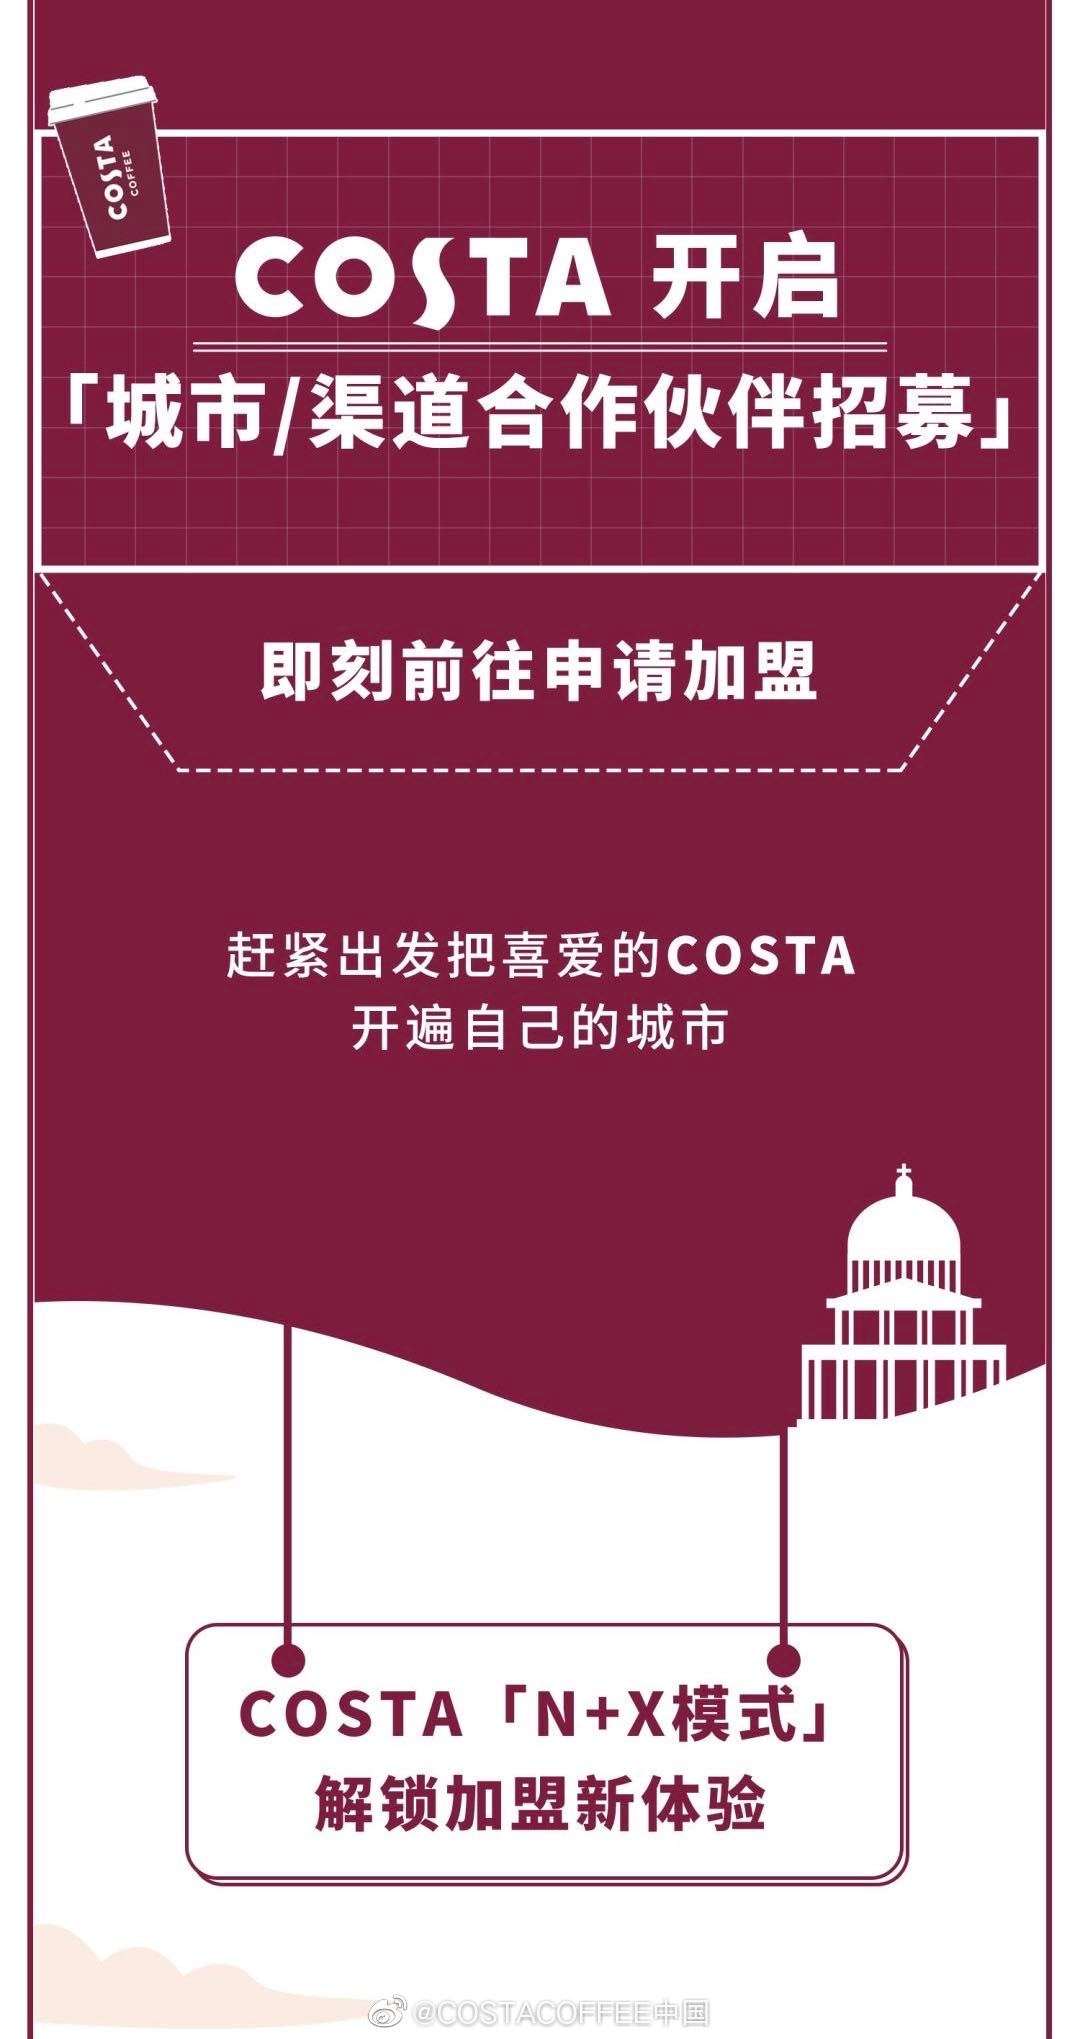 COSTA关闭10%中国门店 咖啡馆生意比想象中还艰难